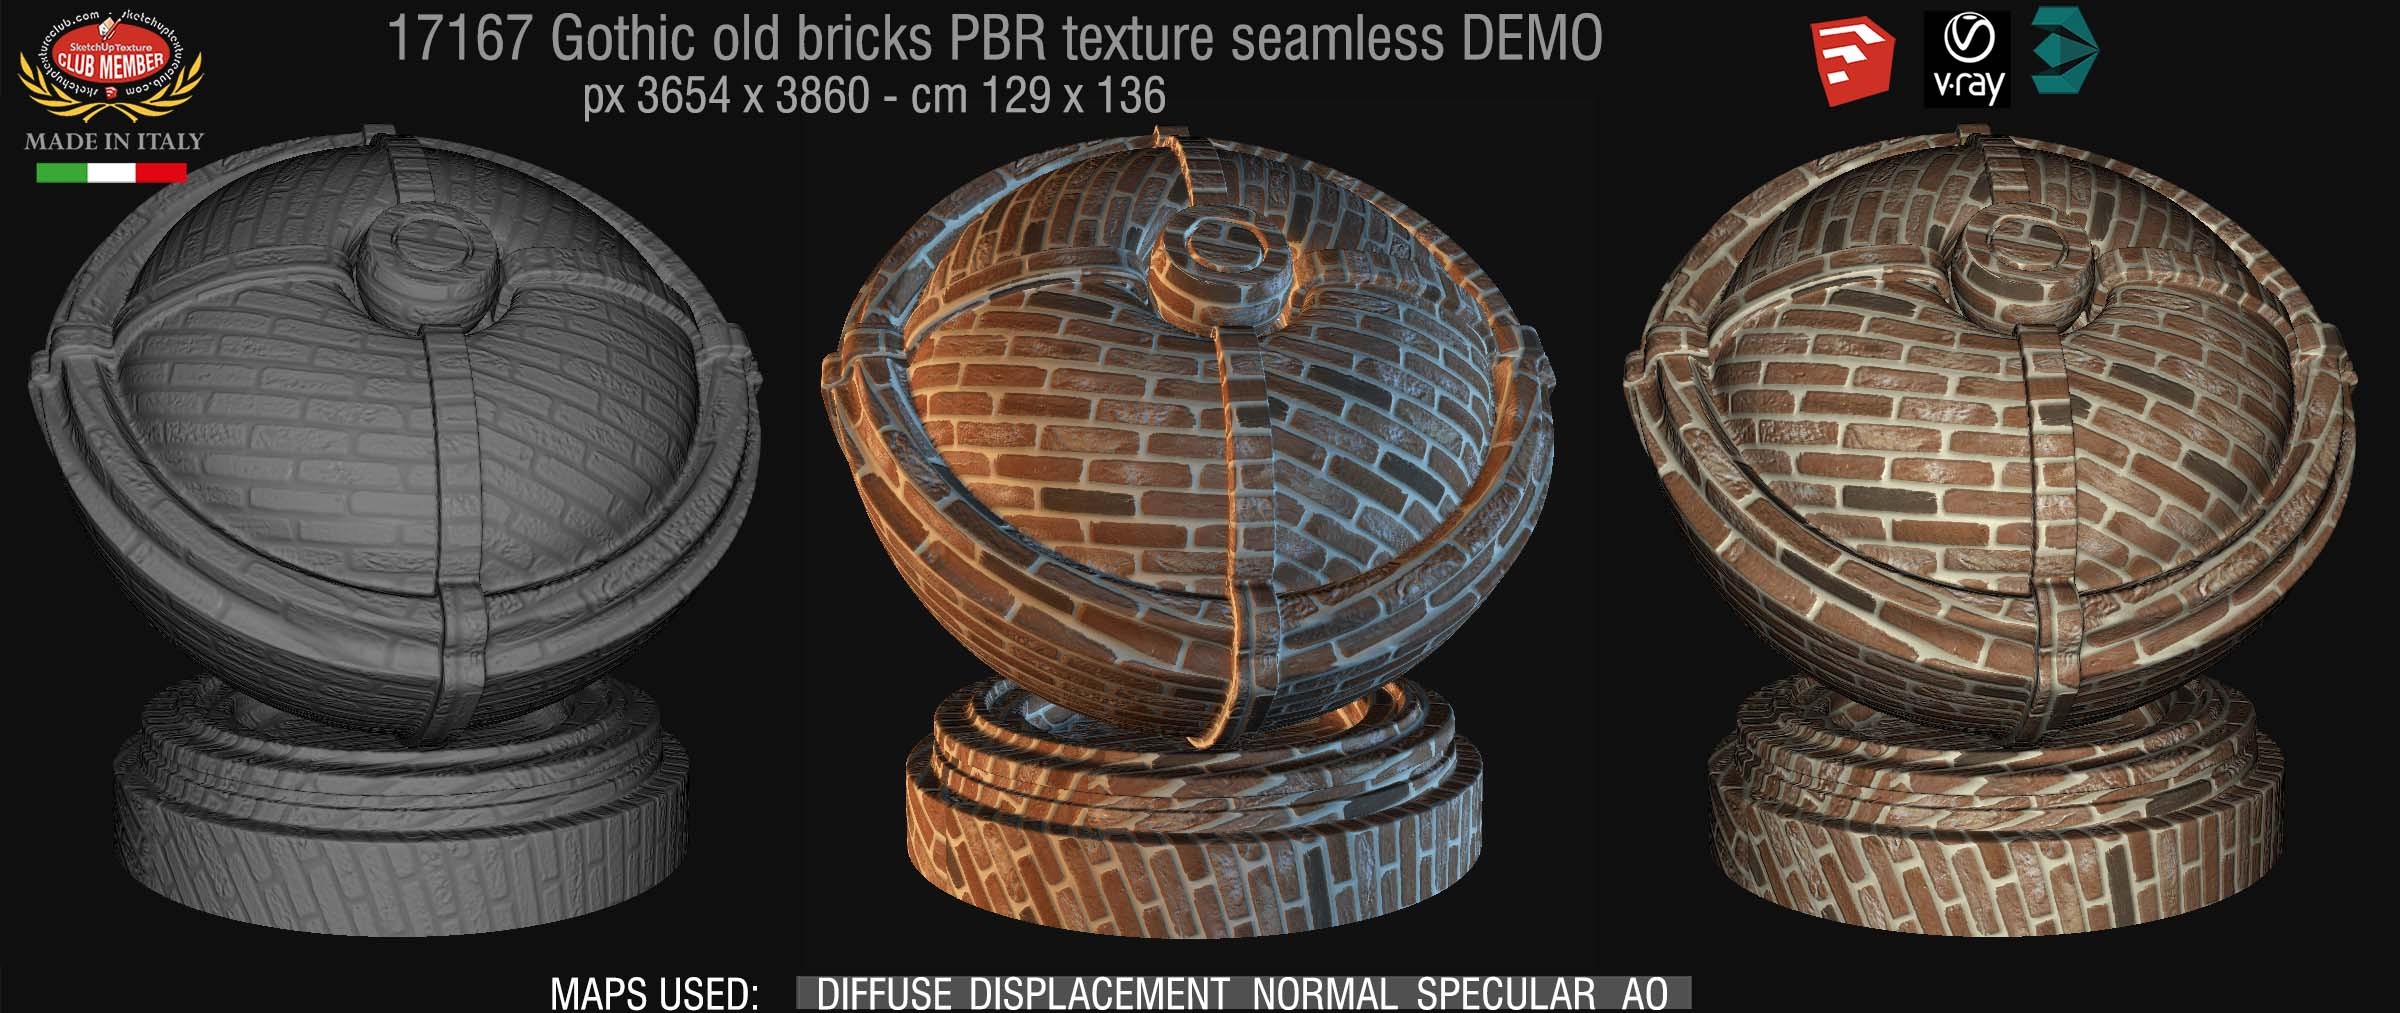 17167 Gothic old bricks PBR texture seamless DEMO